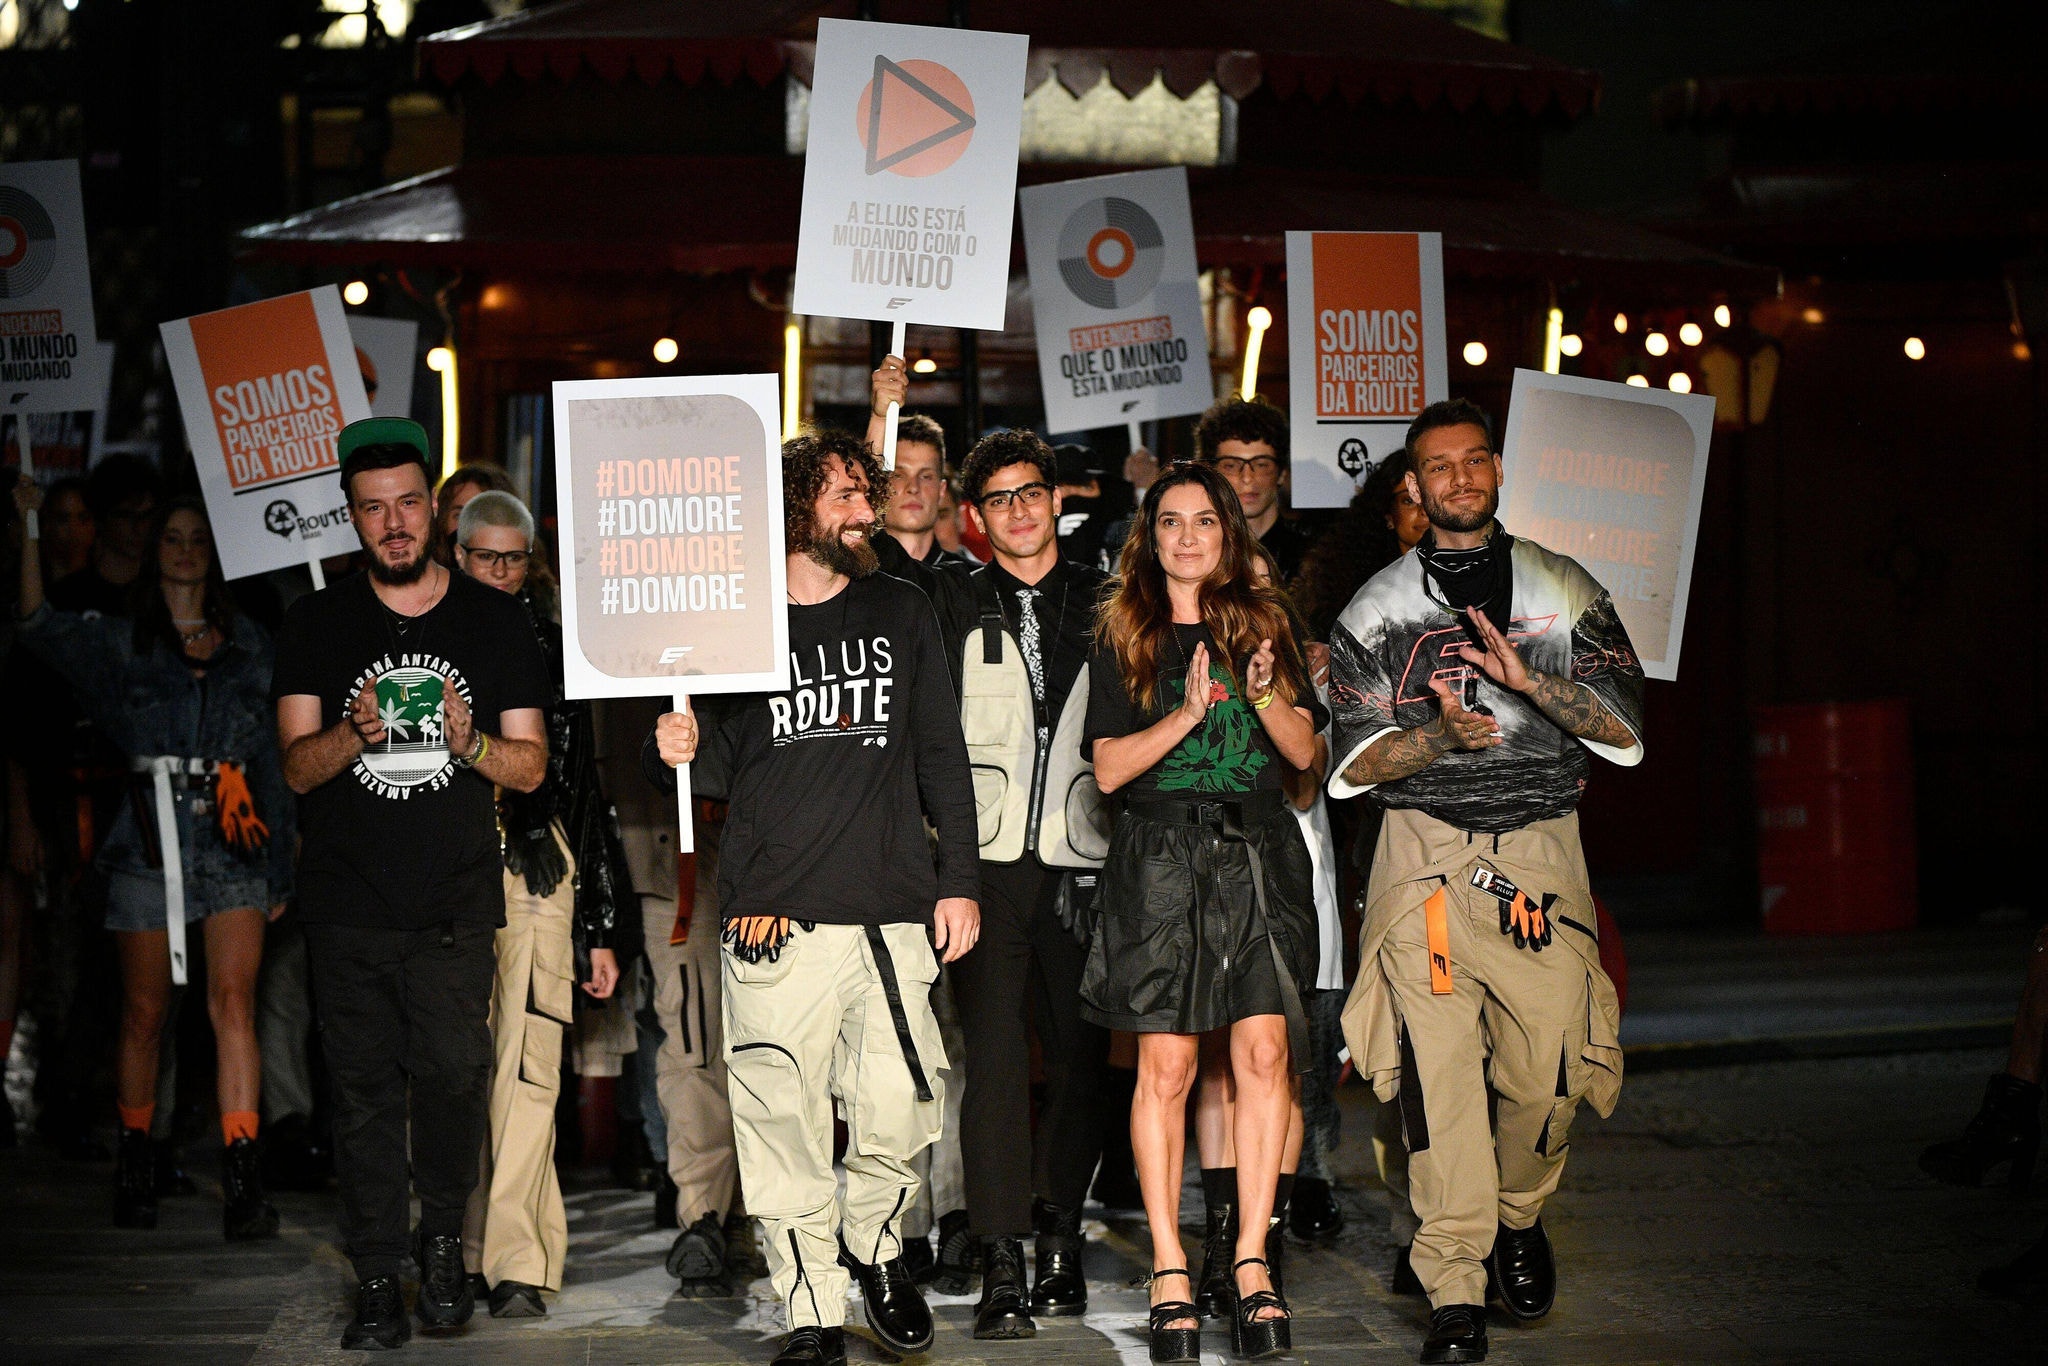 Ellus retorna ao line-up do São Paulo Fashion Week e faz discurso ambiental na passarela